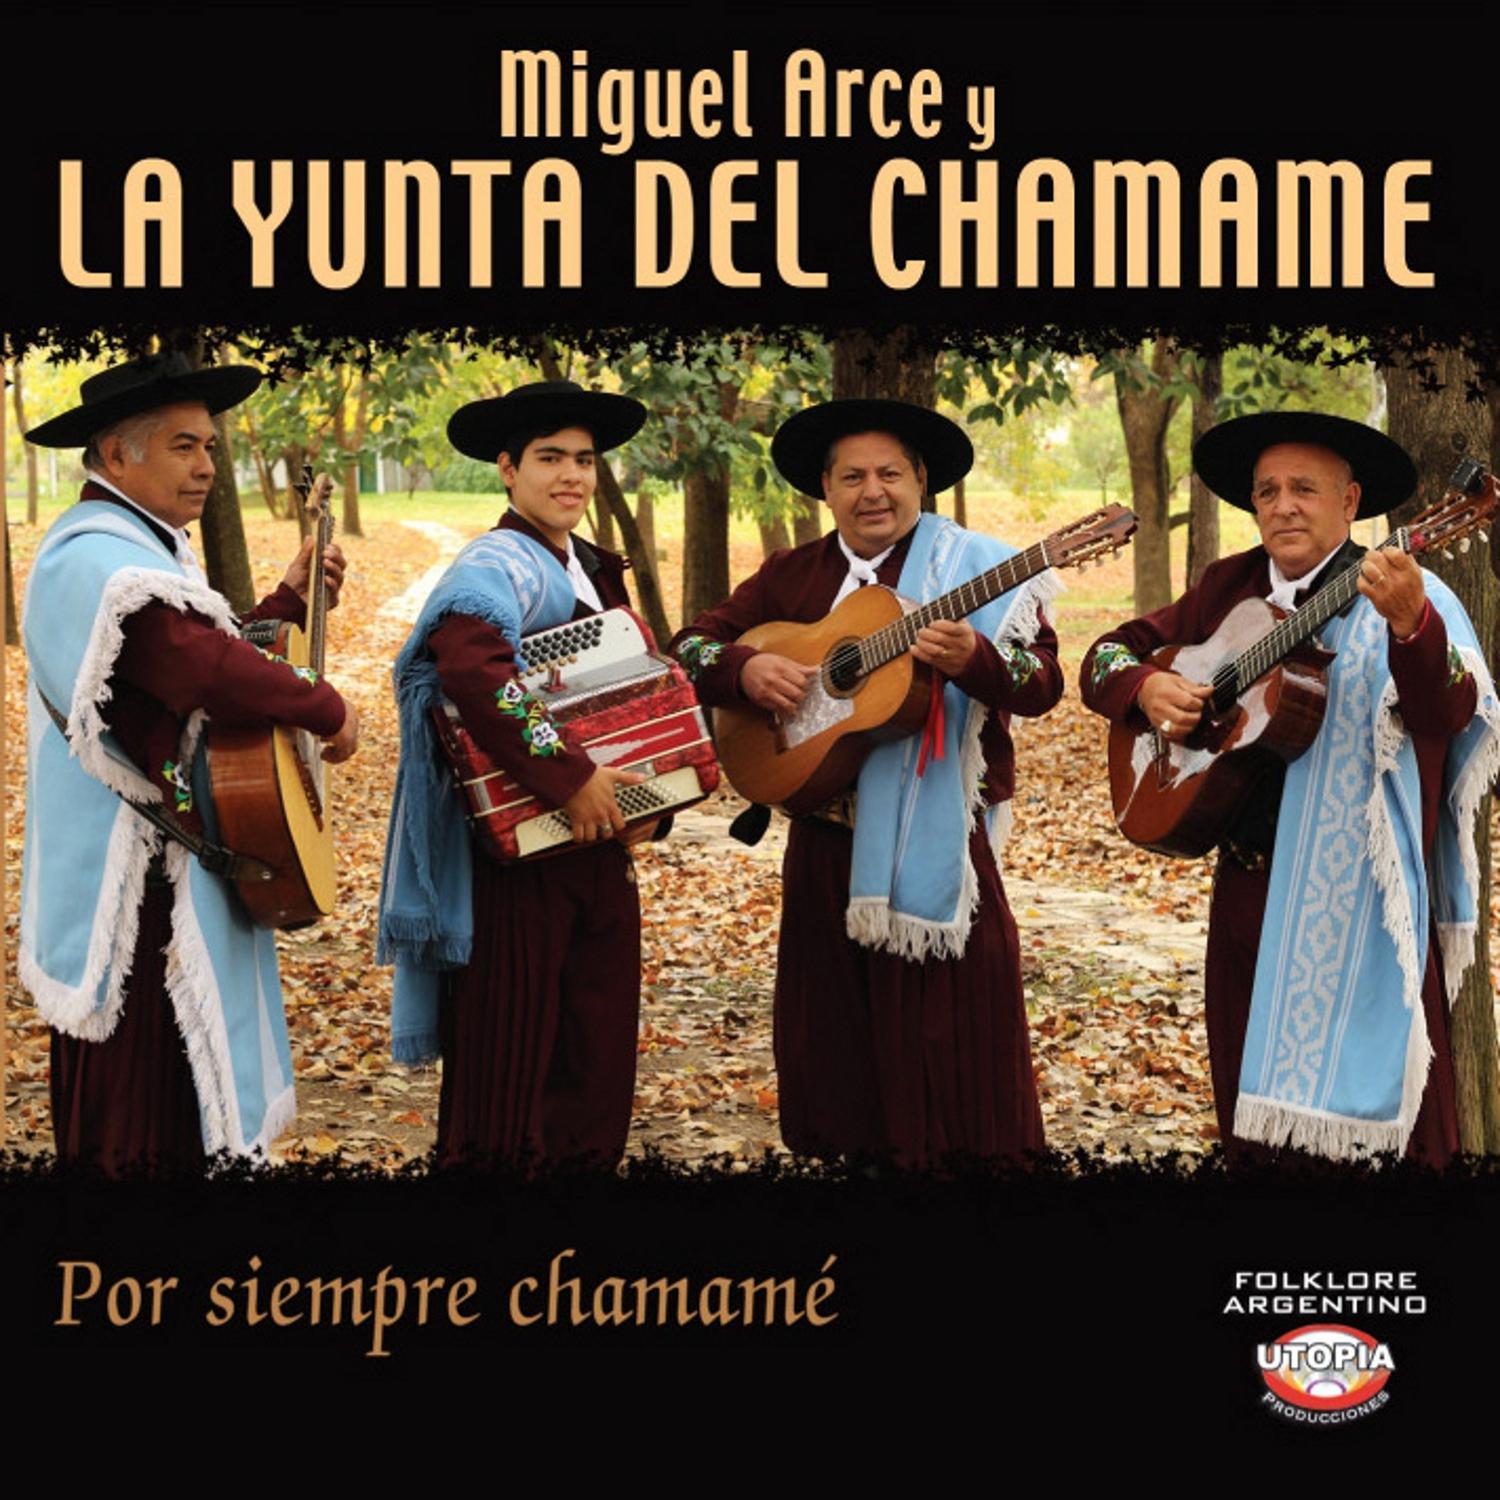 Miguel Arce y La Yunta del Chamamé - Mi Ponchillo Colorado